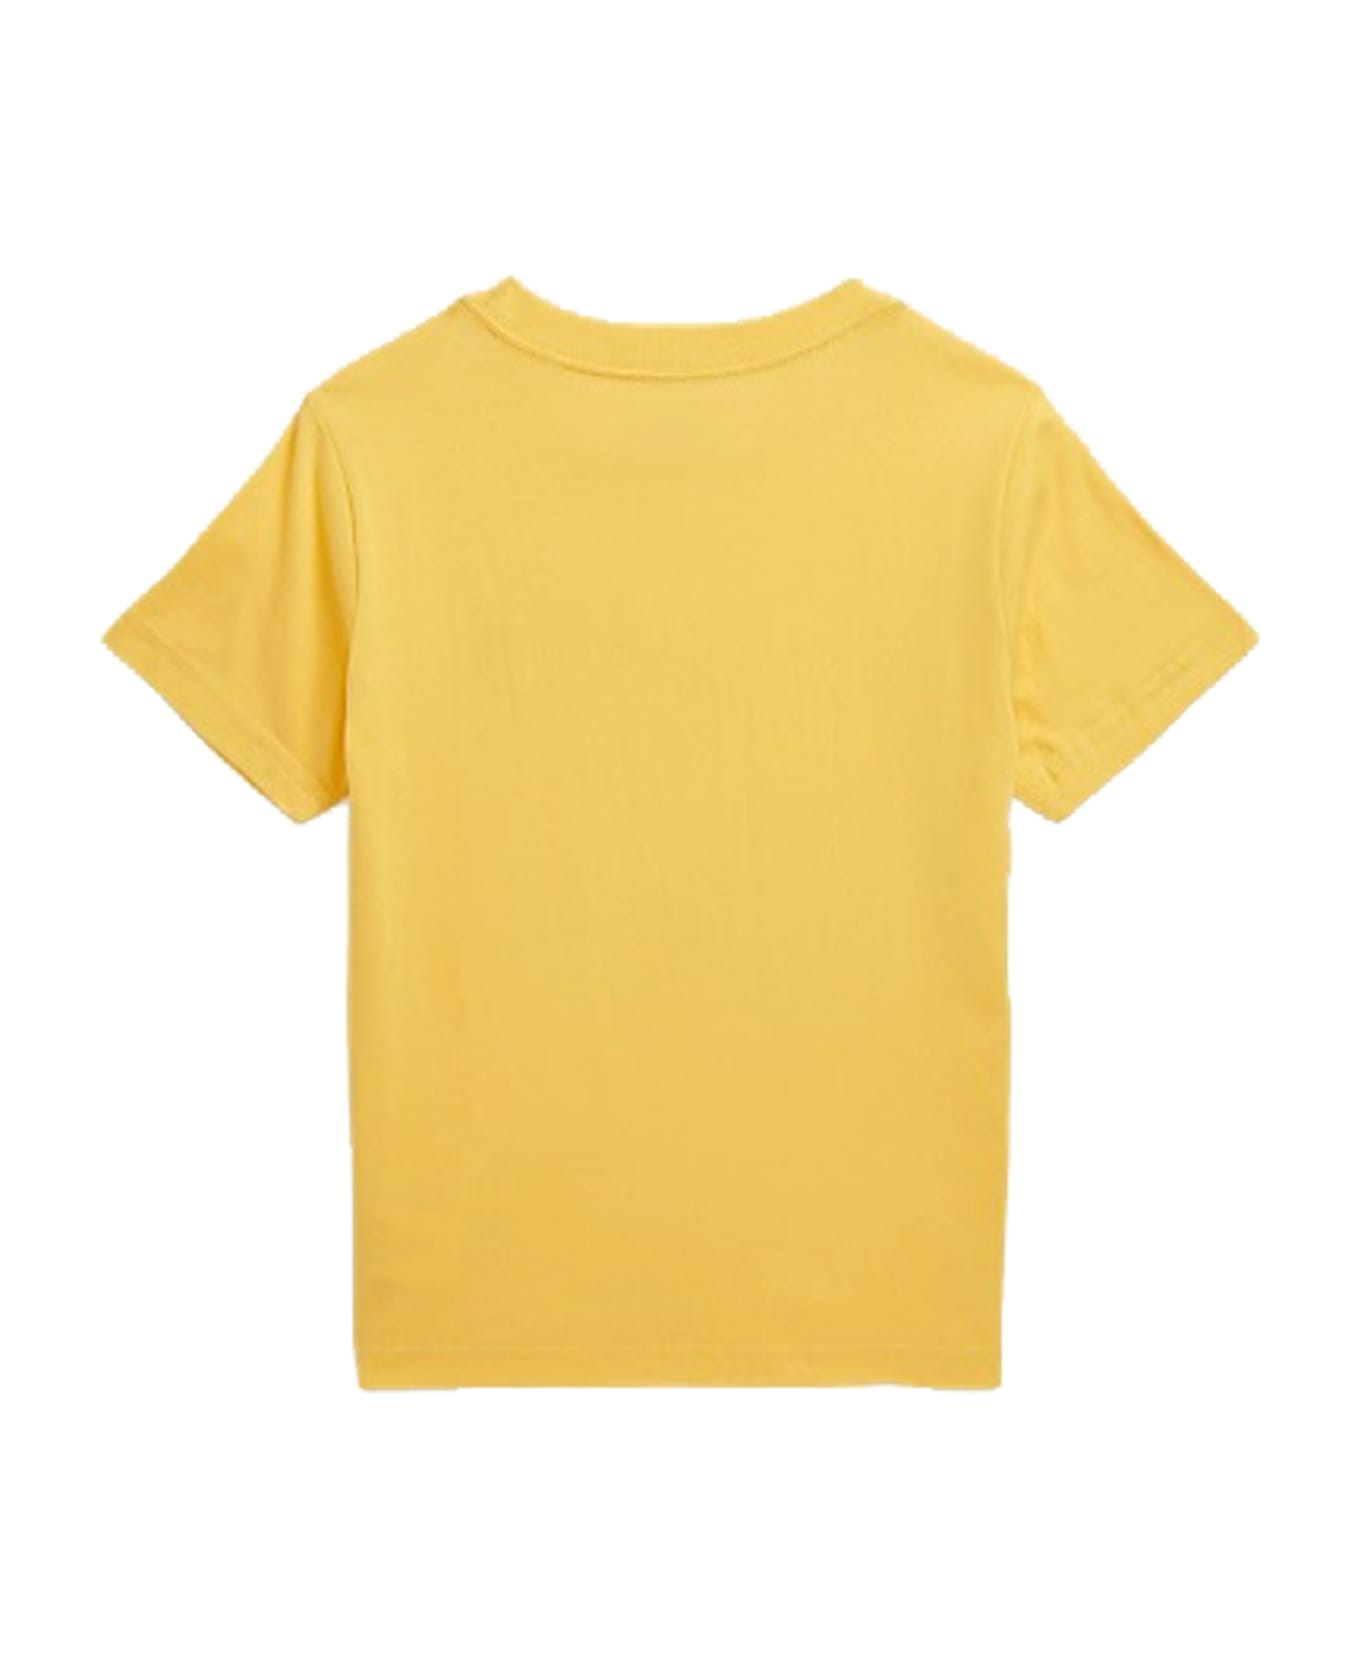 Ralph Lauren Crew Neck Sweater In Cotton Jersey - Yellow